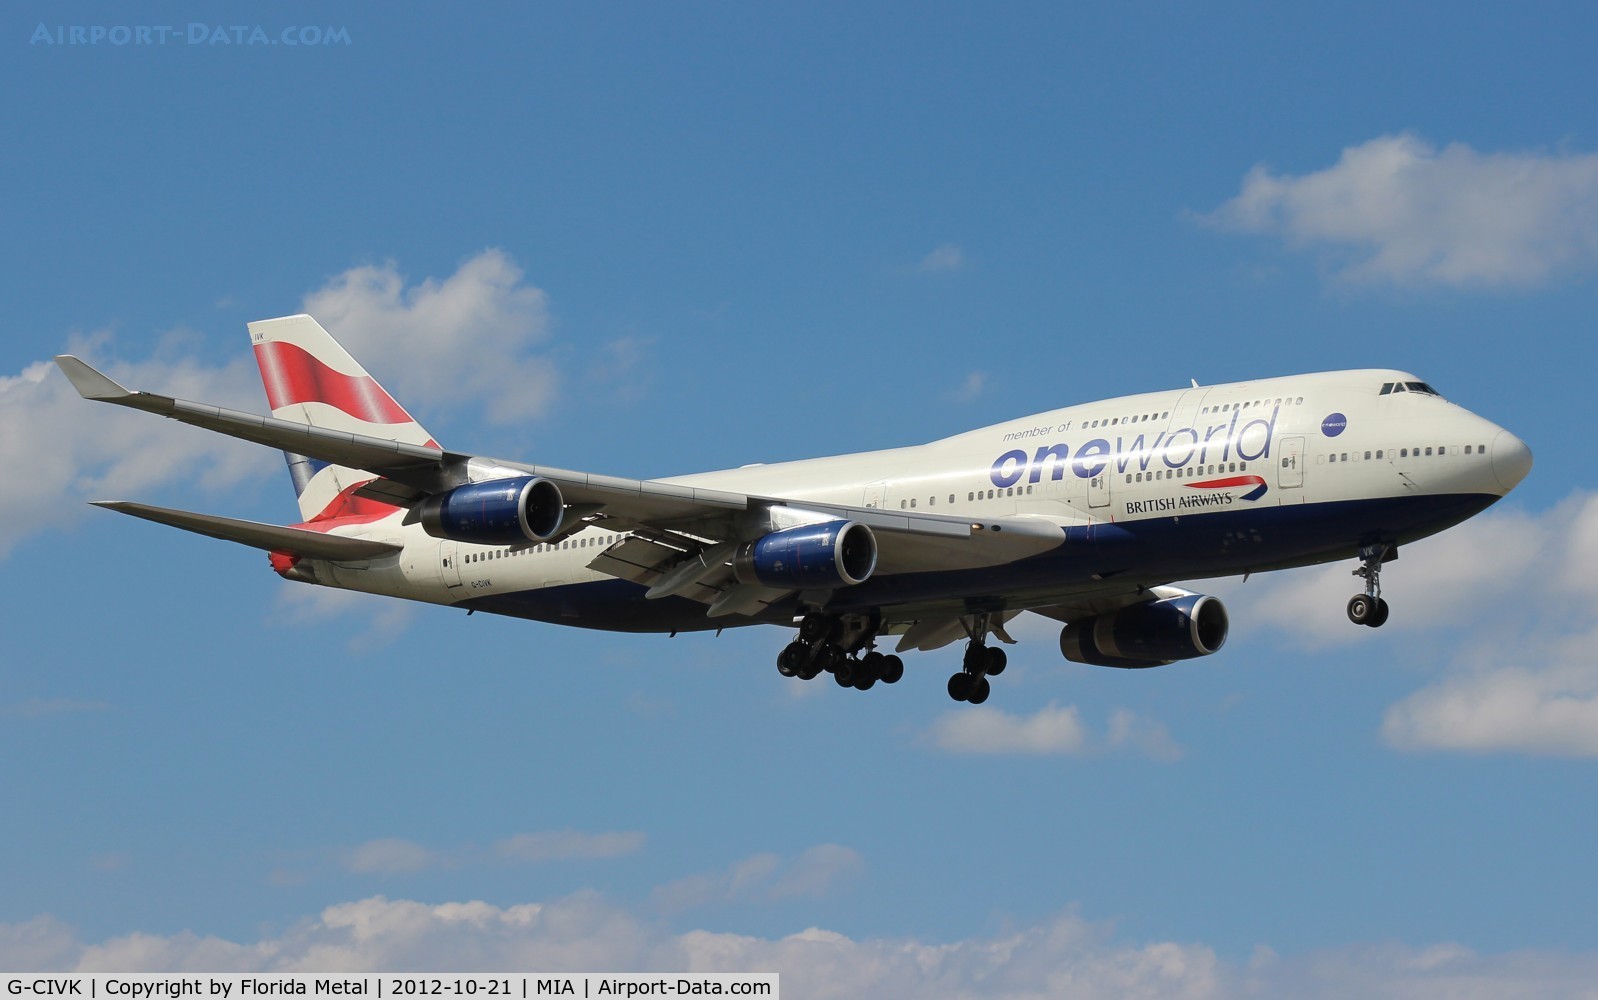 G-CIVK, 1997 Boeing 747-436 C/N 25818, British Airways One World 747-400